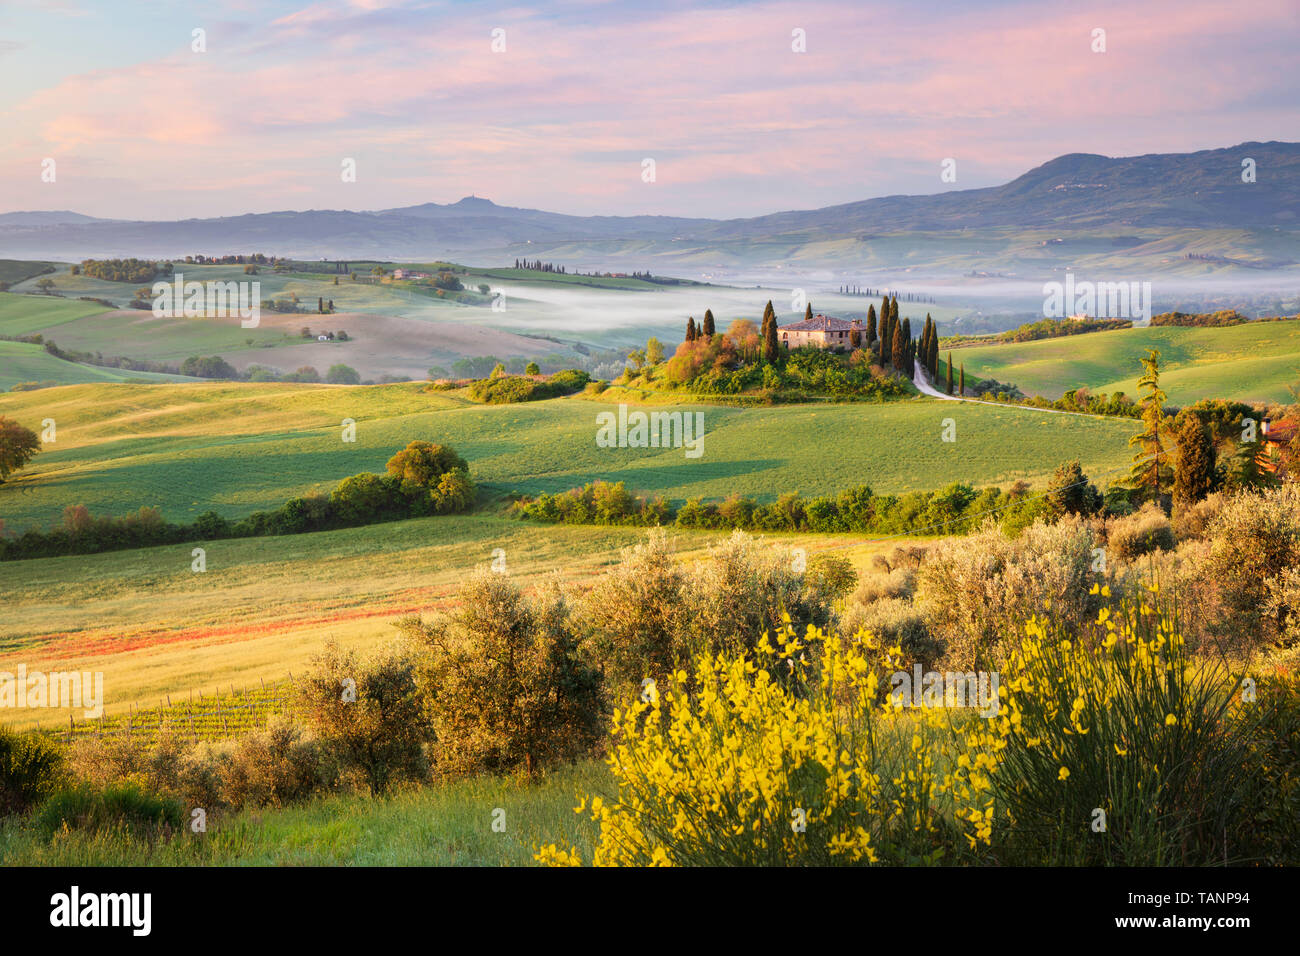 Blick über misty morning toskanische Landschaft mit traditionellen Bauernhaus und Zypressen, San Quirico d'Orcia Provinz Siena, Toskana, Italien, Europa Stockfoto